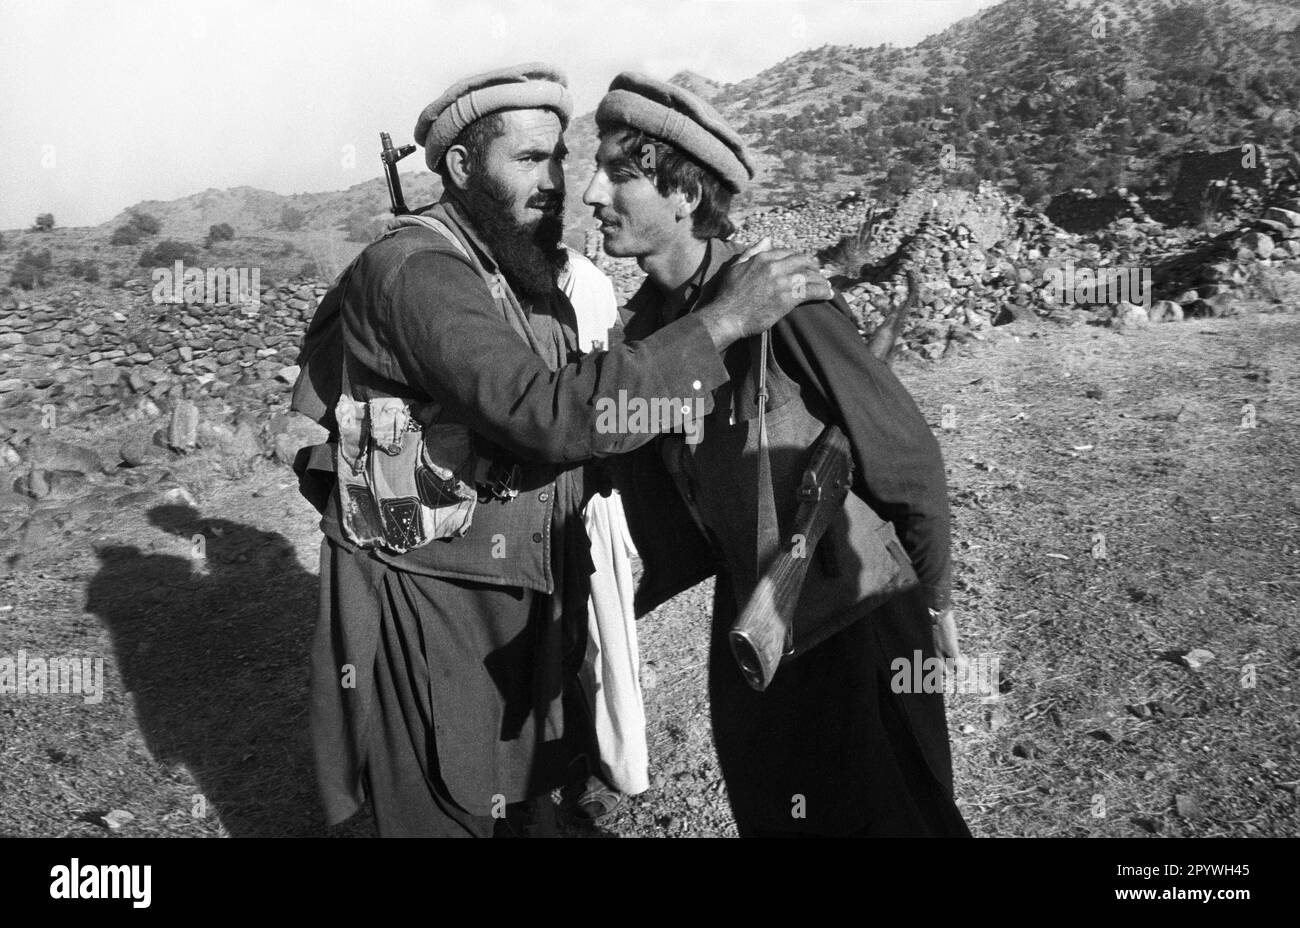 Afghanistan, Tani, 24.10.1990. Archiv-Nr.: 21-53-23 Foto: Ein Mudschaheddin-Kämpfer in den Bergen. [Maschinelle Übersetzung] Stockfoto